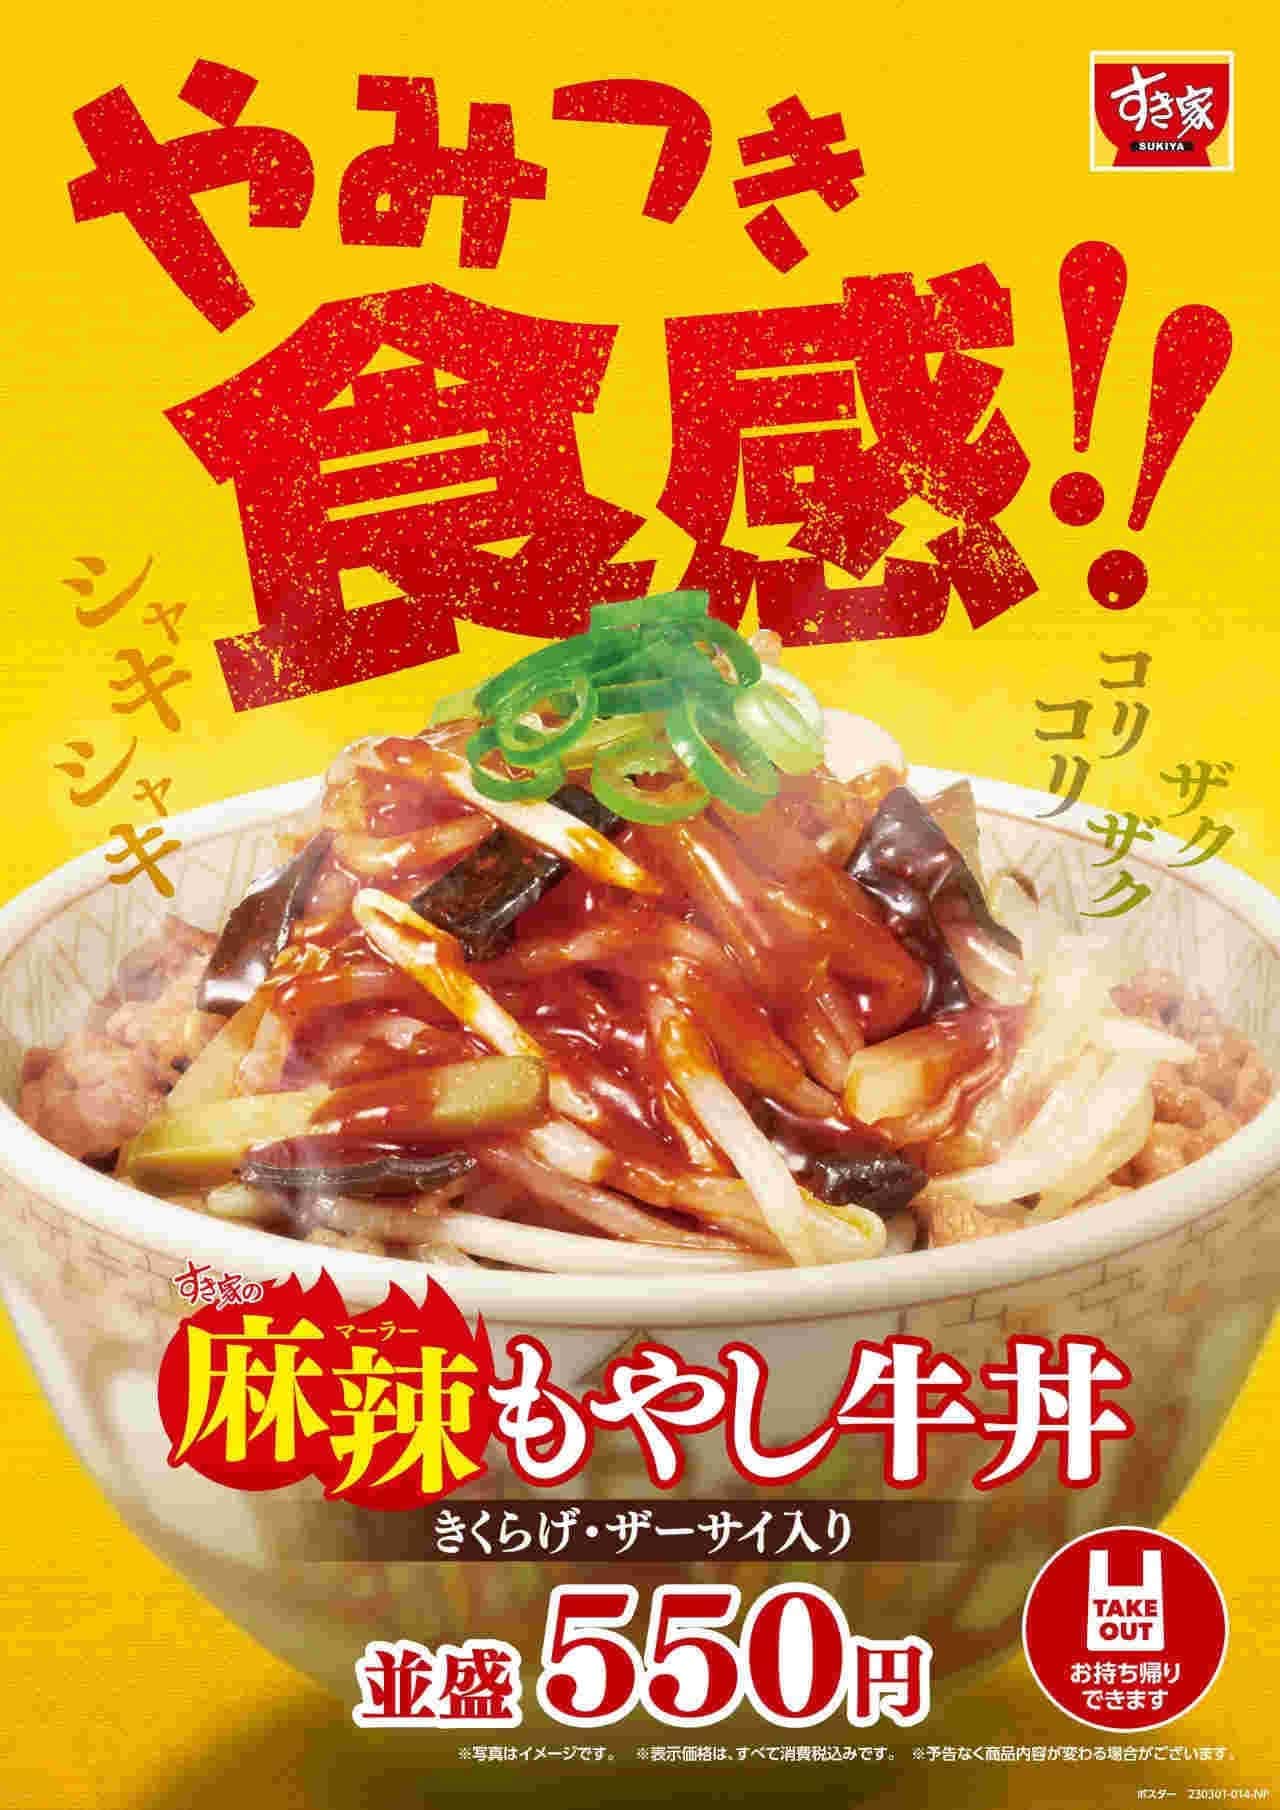 Sukiya "hot bean sprouts beef bowl", "garlic hot bean sprouts beef bowl", "hot bean sprouts beef kalbi bowl".